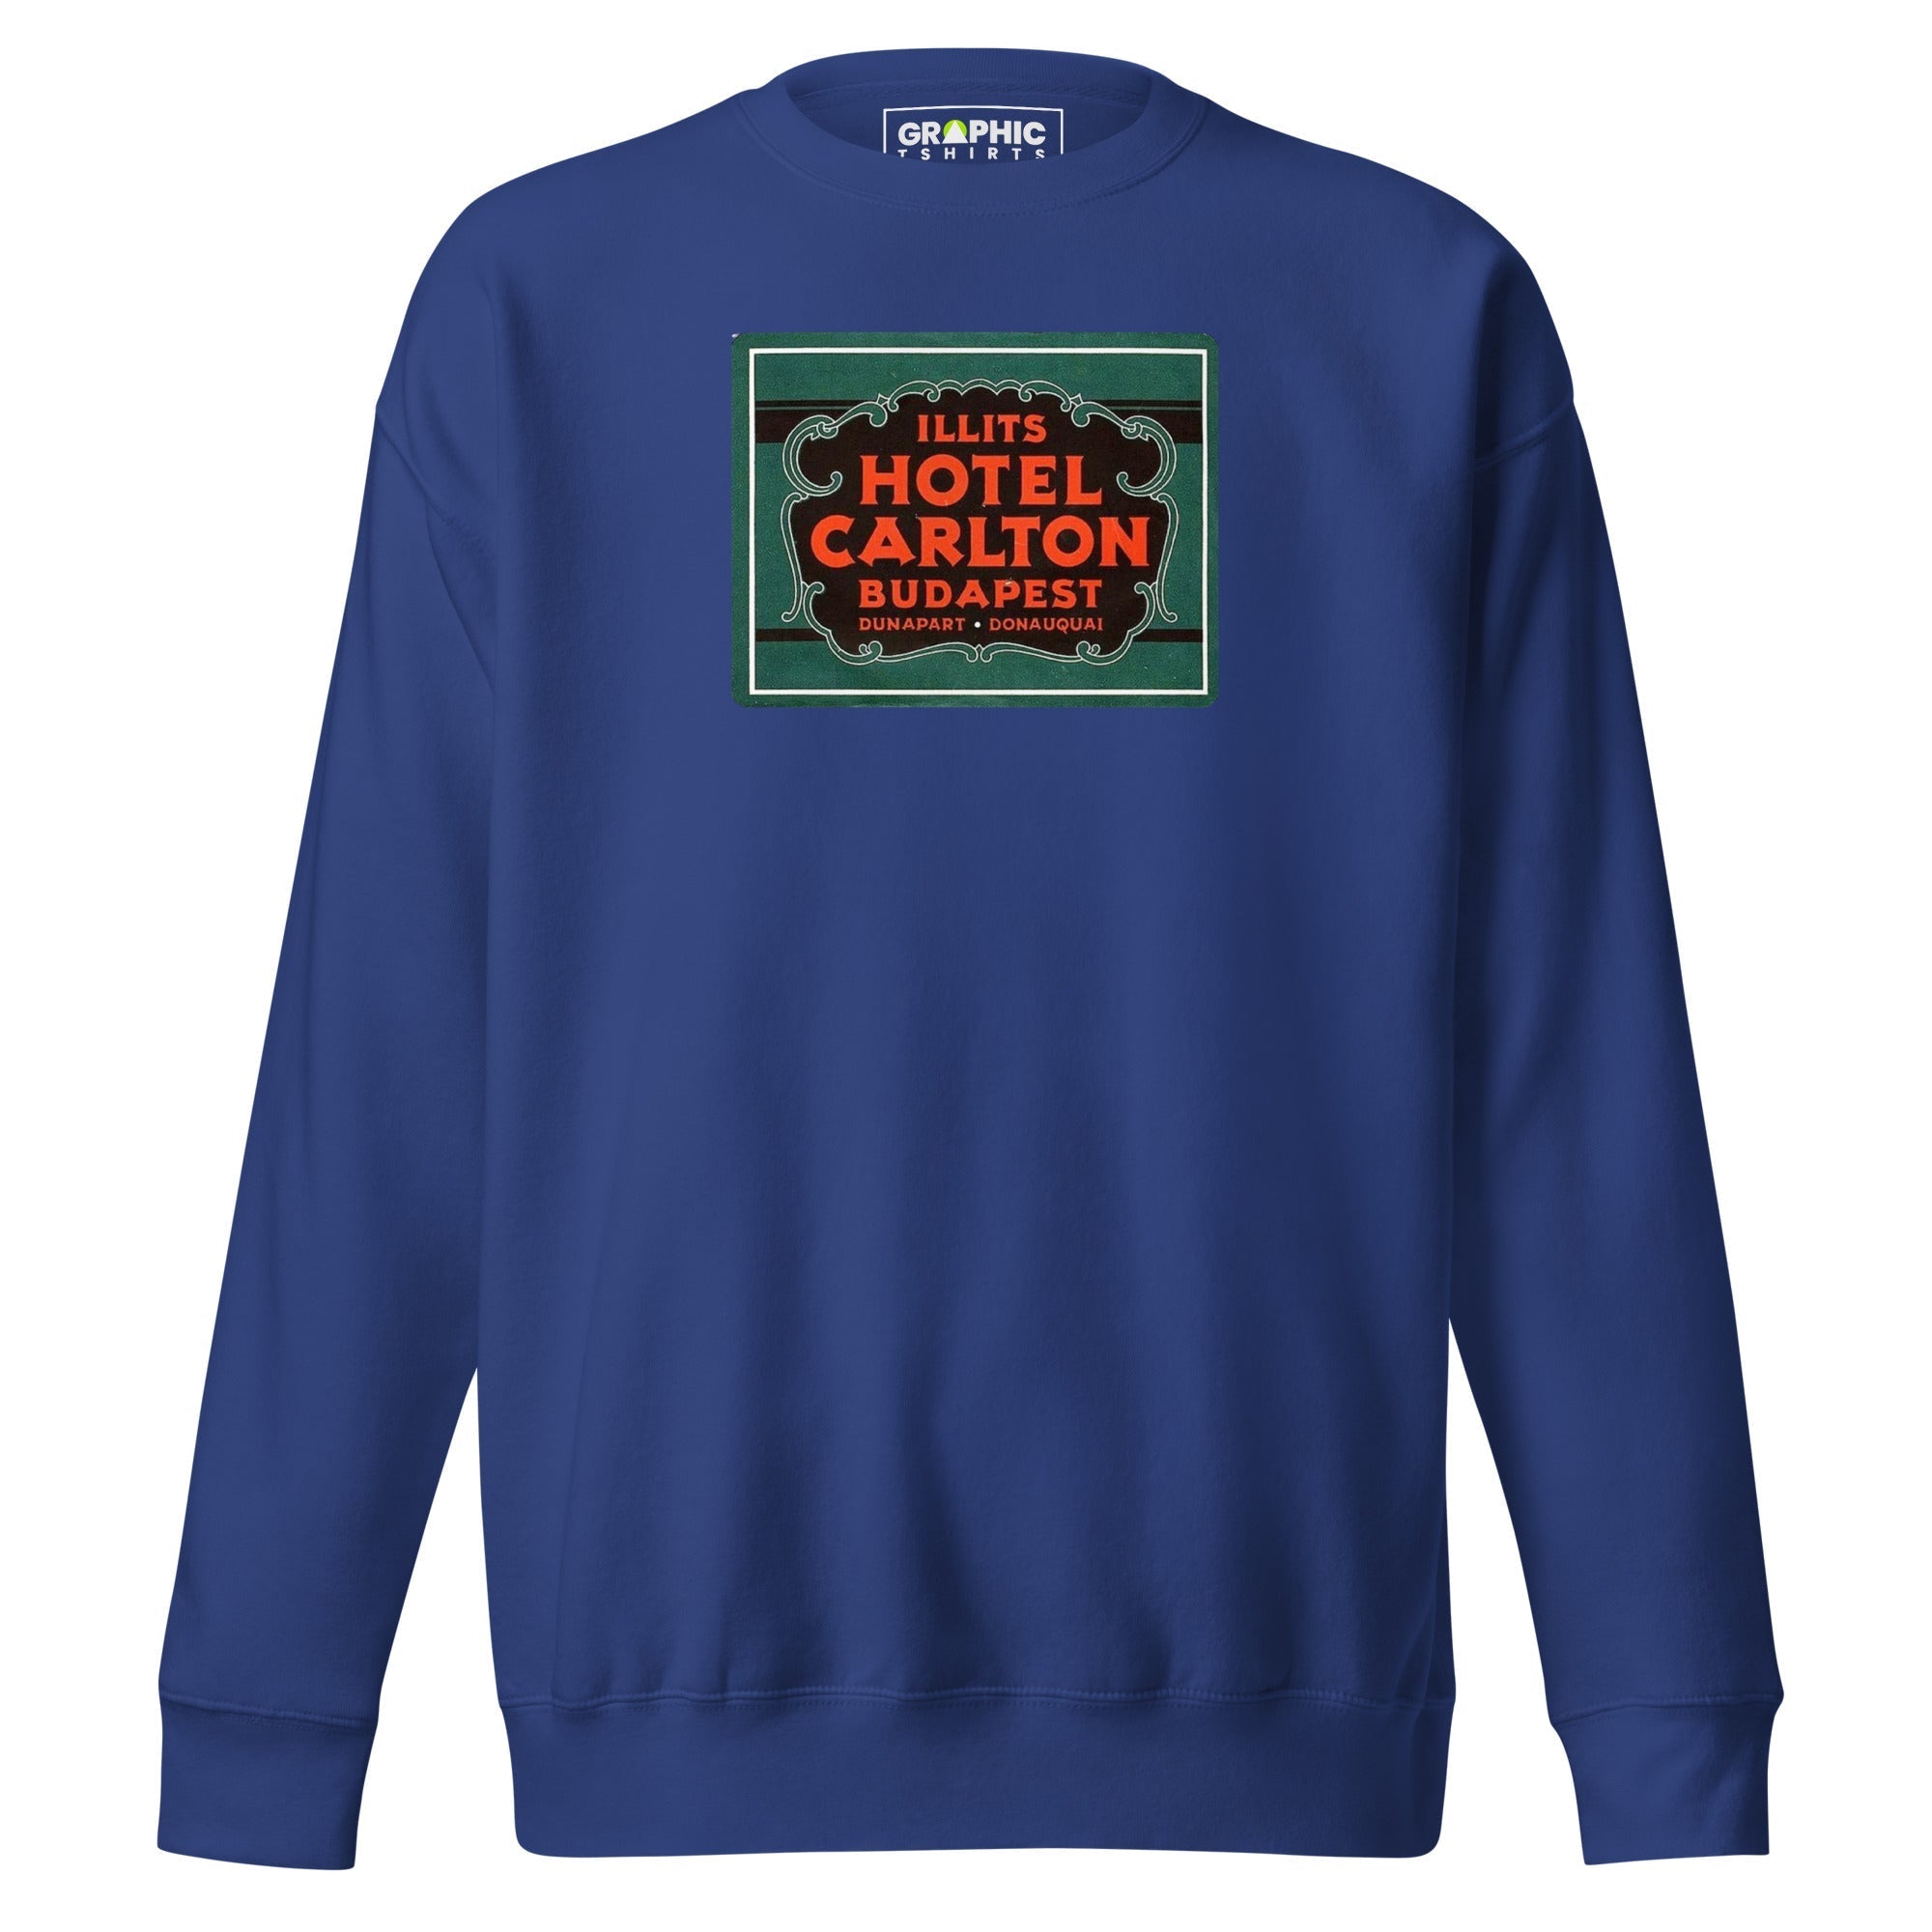 Unisex Premium Sweatshirt - Illits Hotel Carlton Budapest Hungary Vintage - GRAPHIC T-SHIRTS